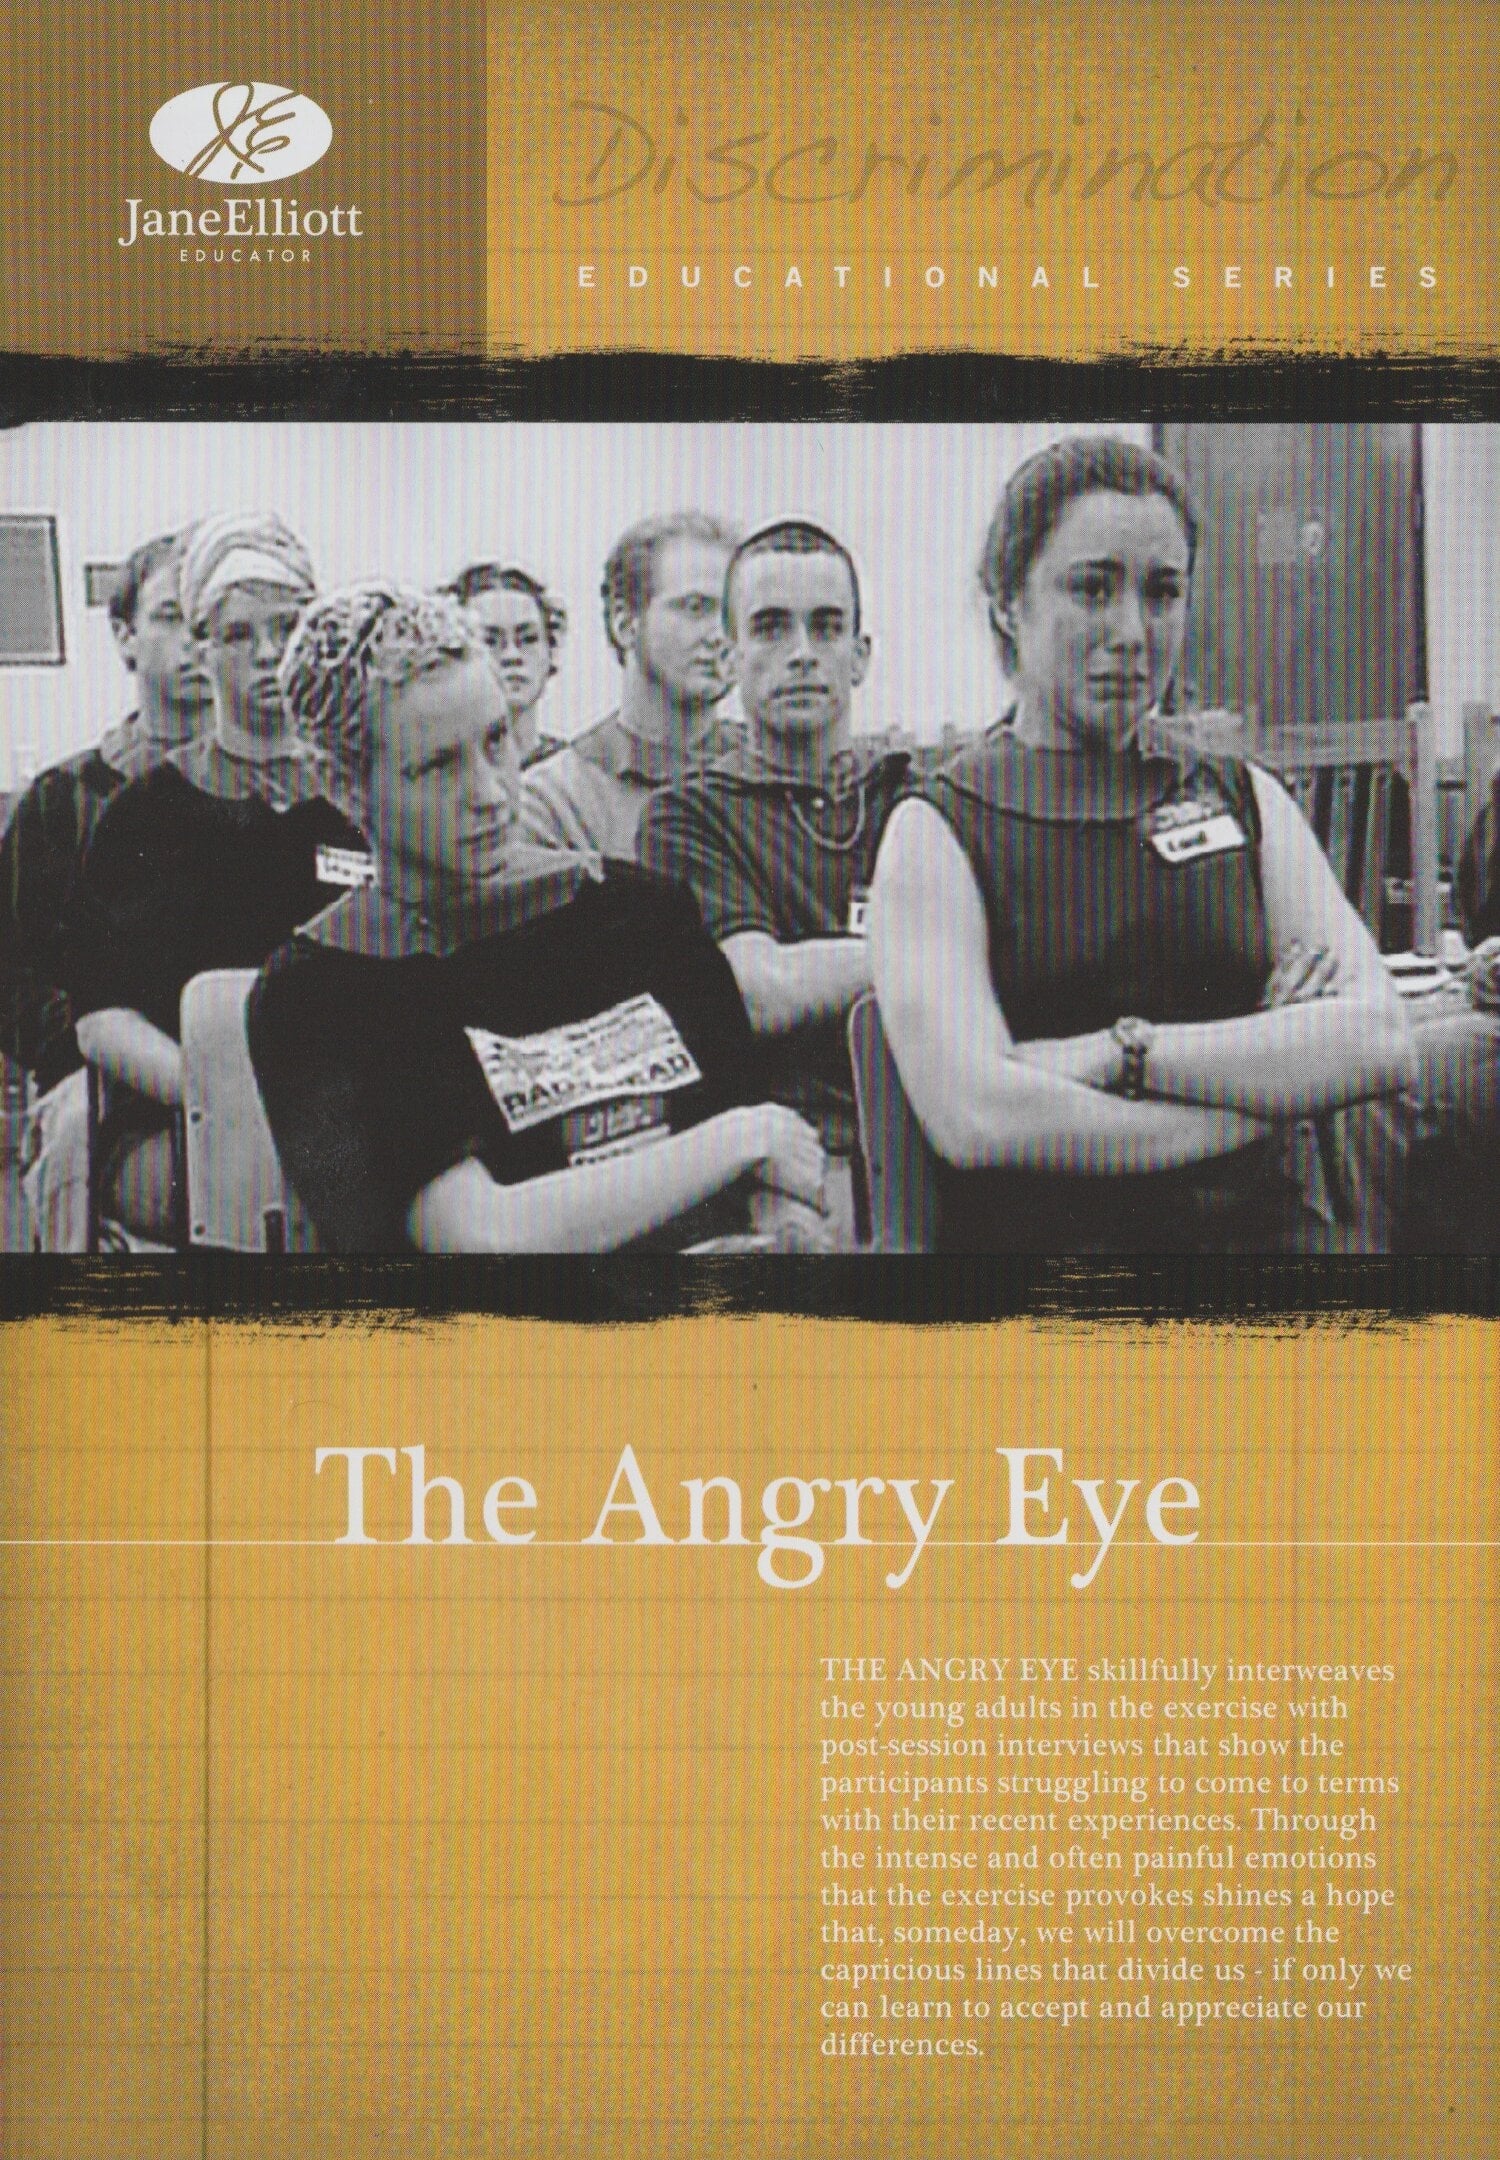 The Angry Eye